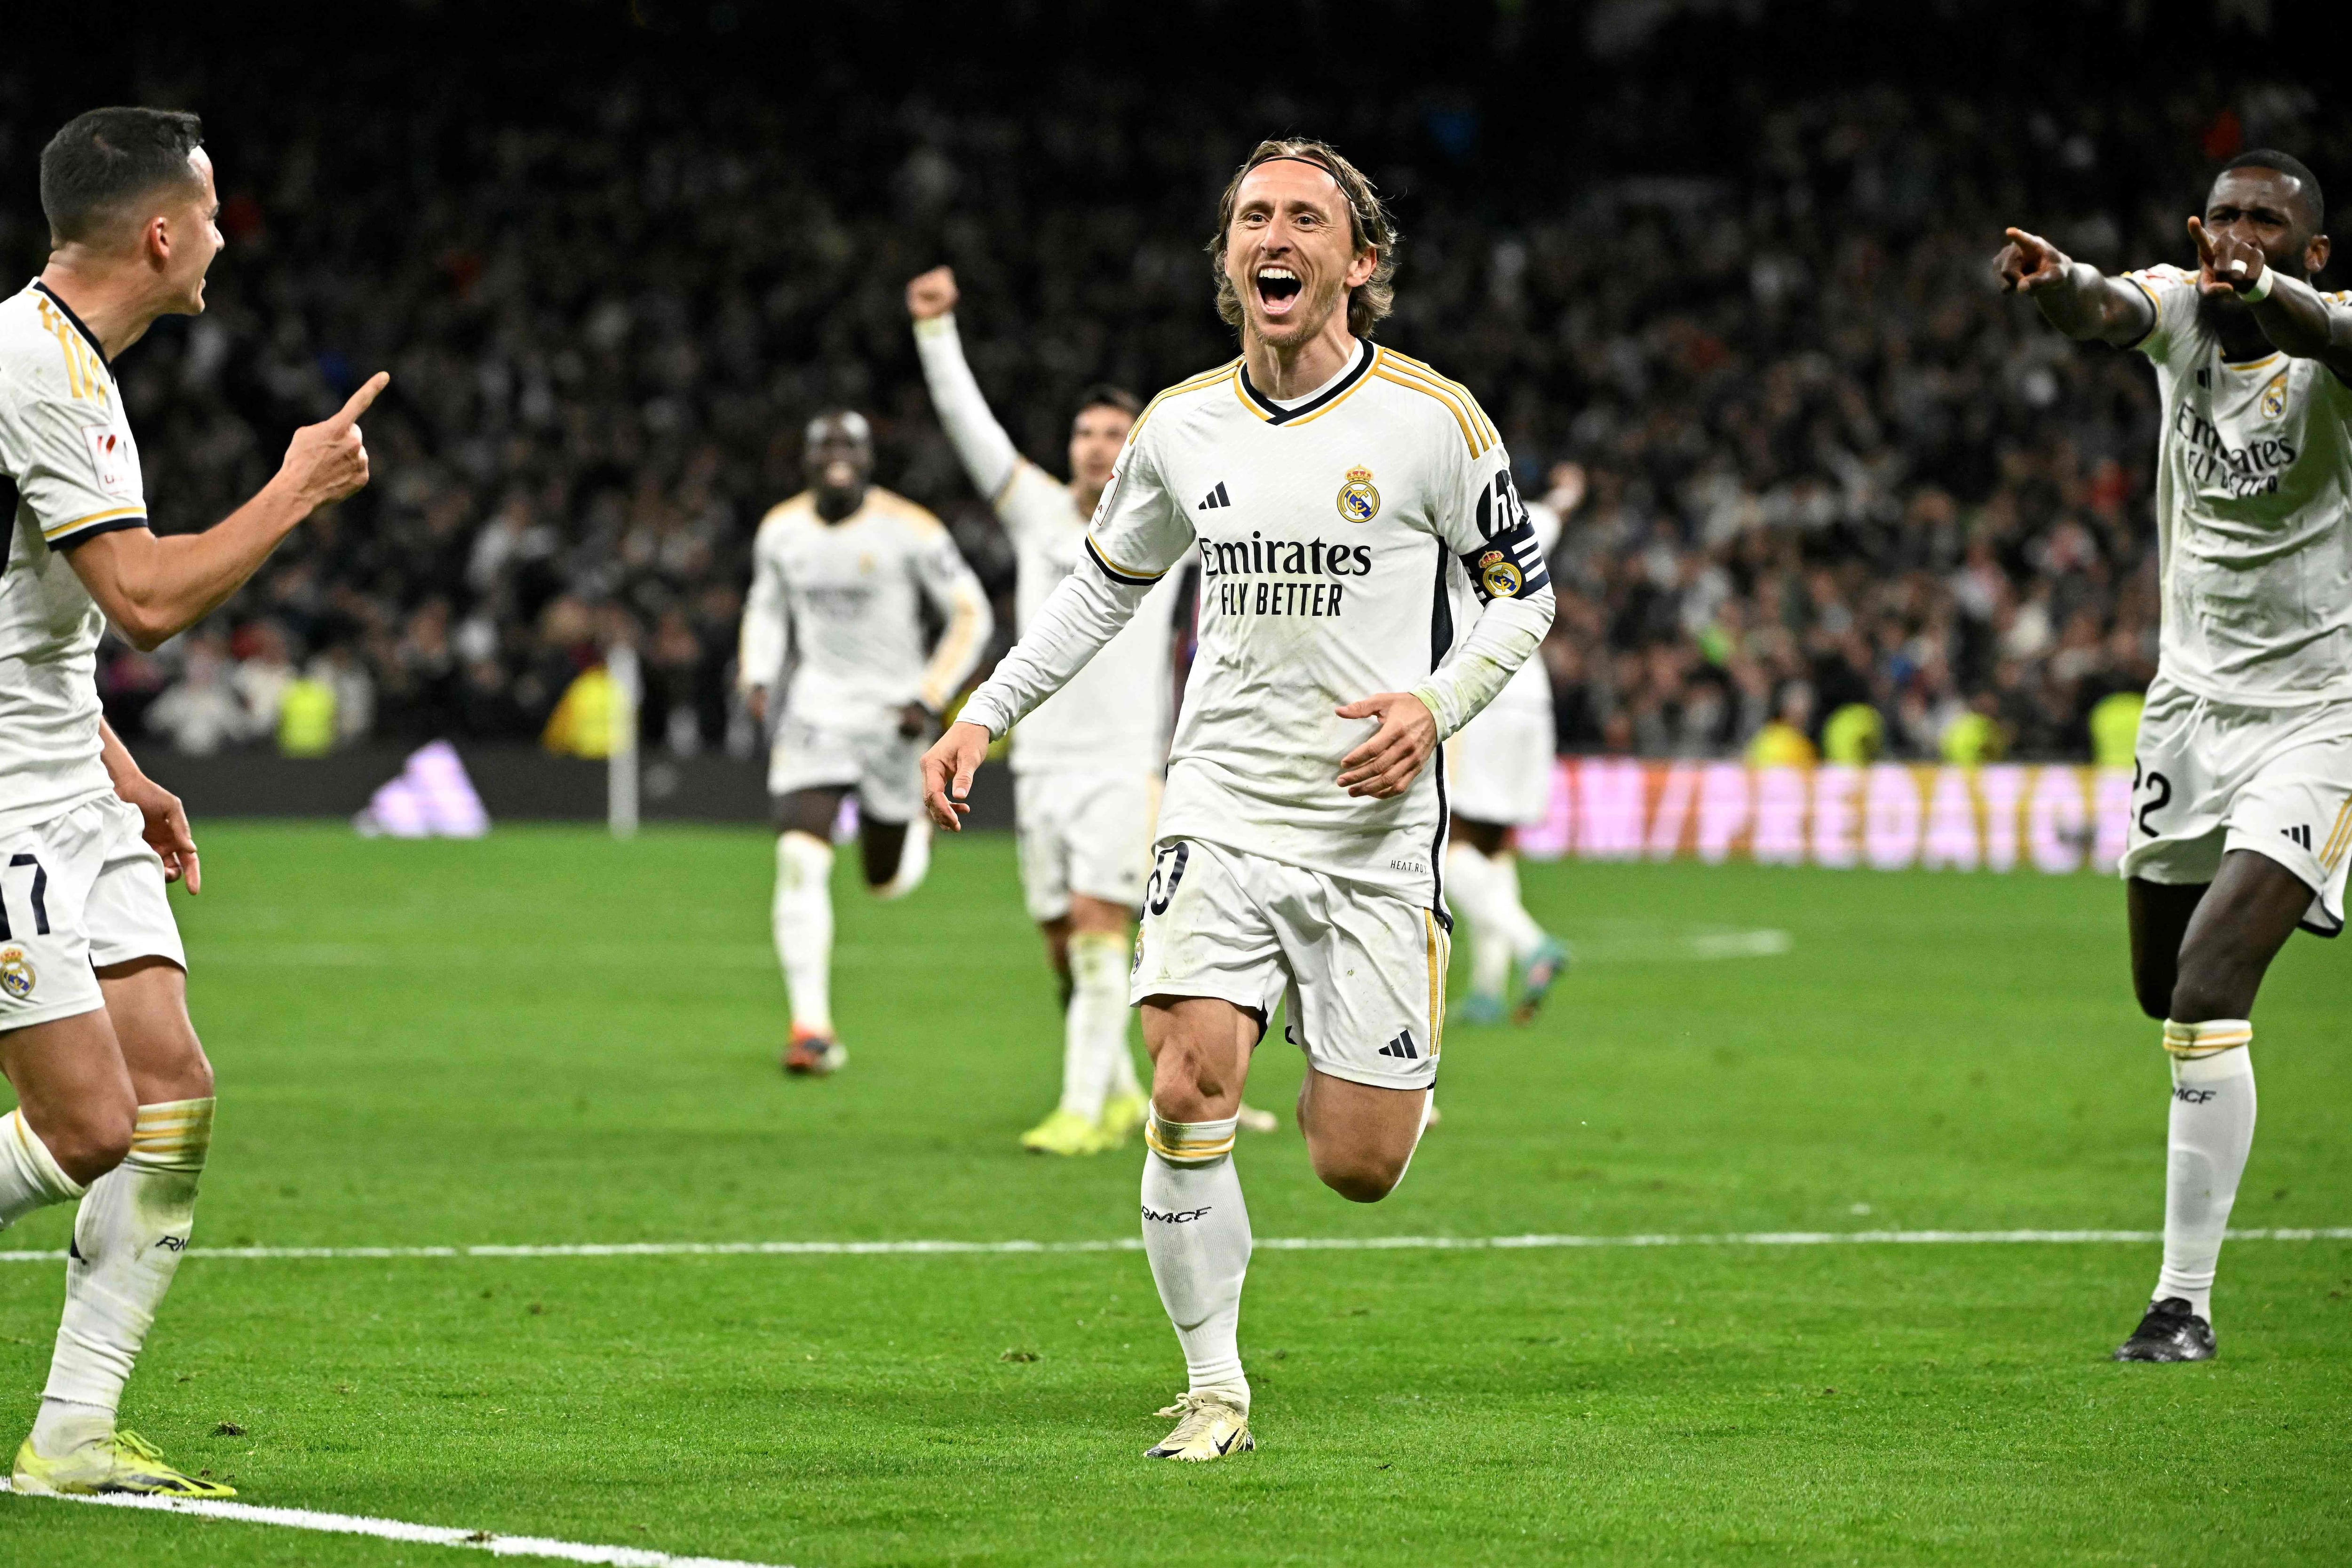 Luka Modric extiende su contrato con el Real Madrid hasta 2025, sumando más éxitos a su destacada trayectoria en el club.